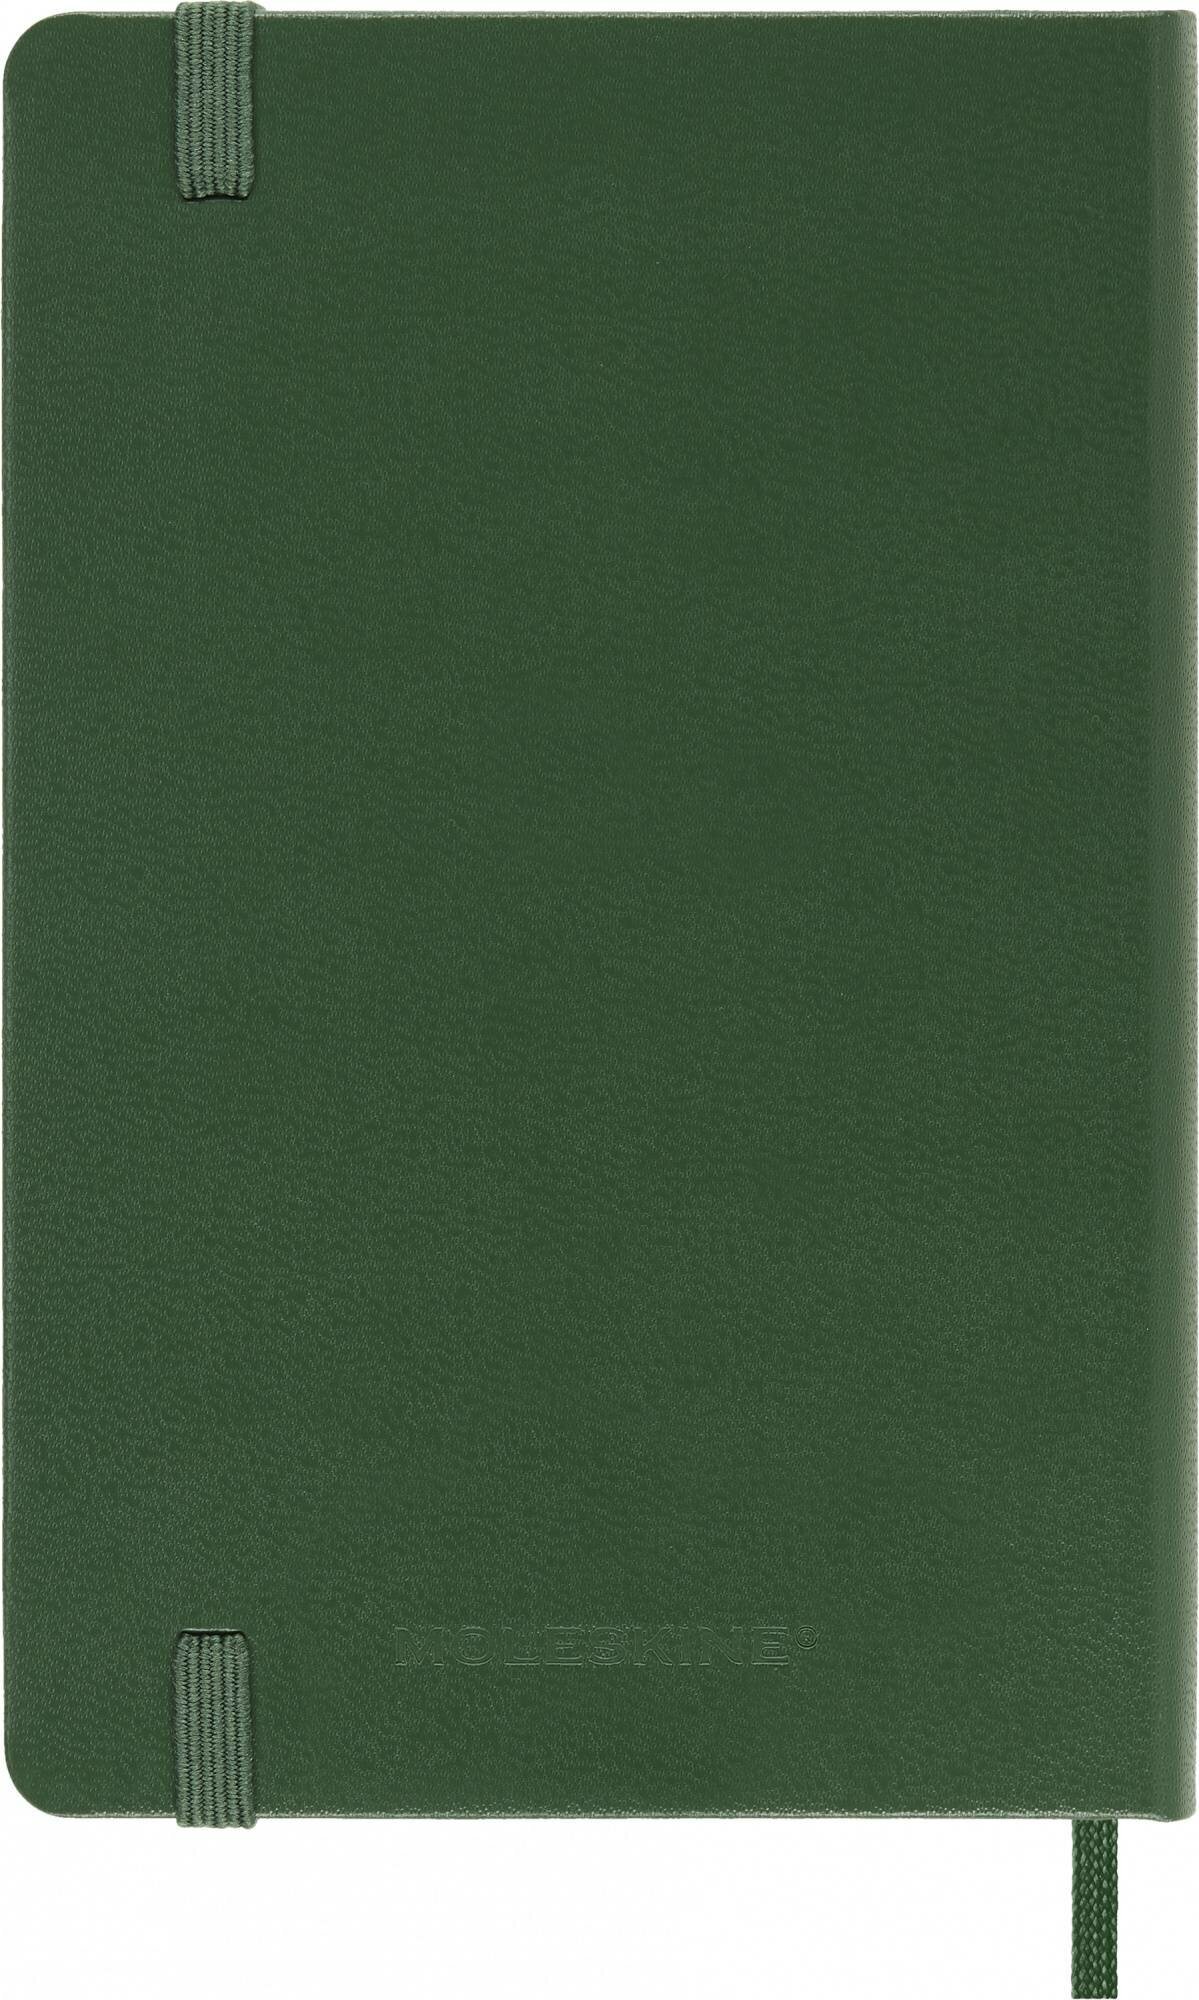 Блокнот Moleskine CLASSIC Pocket 90x140мм 192стр. линейка твердая обложка зеленый 9 шт./кор. - фото №6